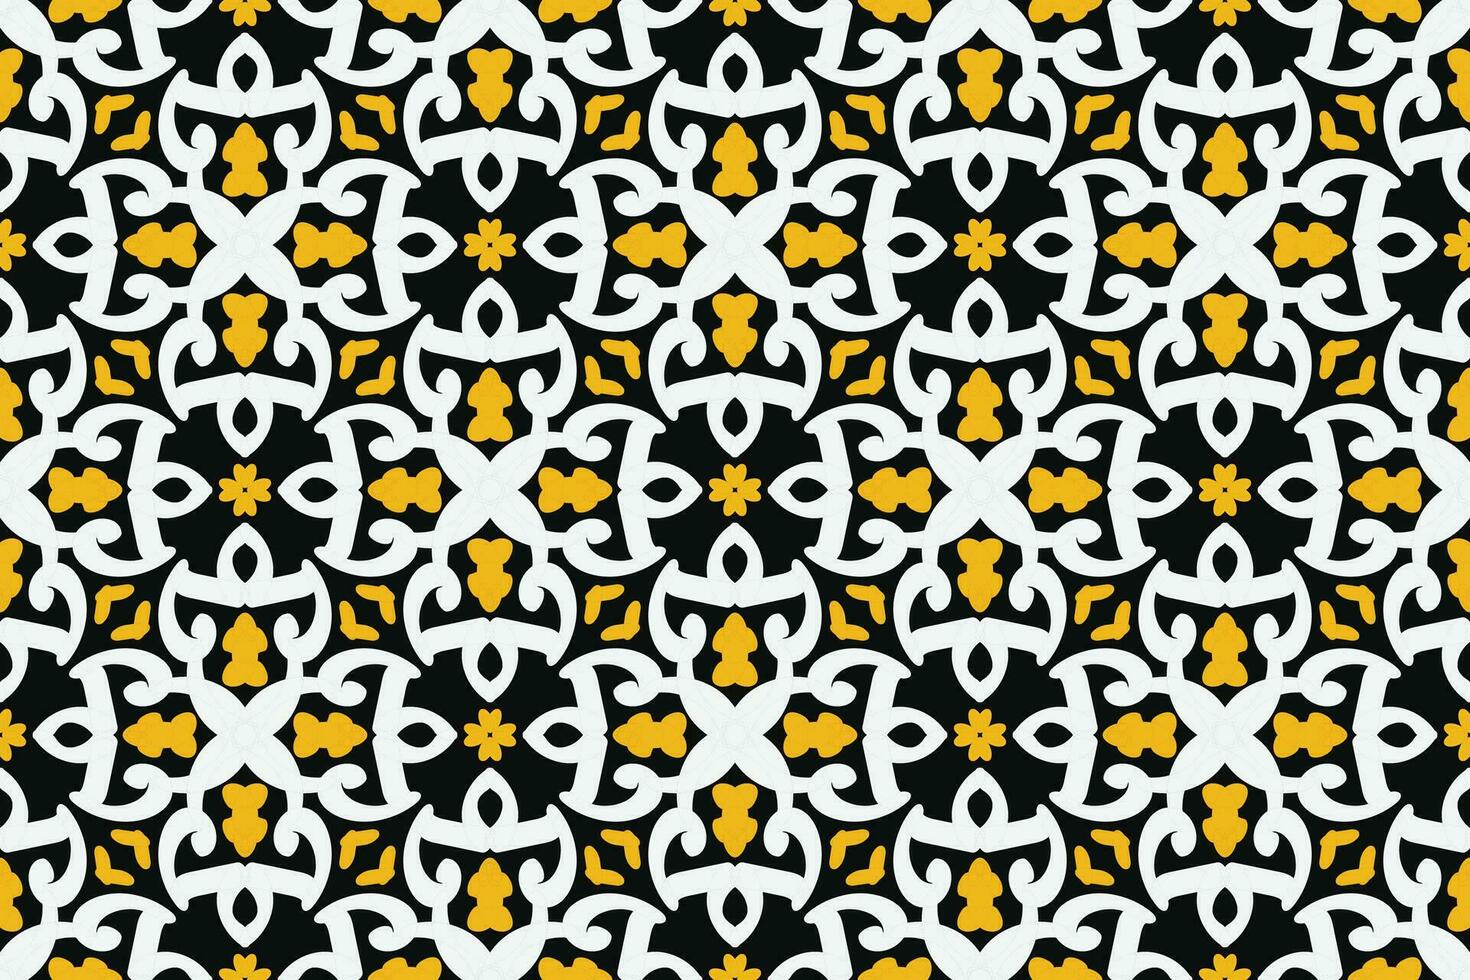 Spaans tegel patroon vector naadloos met bloemen ornamenten. Portugees azulejos keramiek, Mexicaans talavera, Italiaans Sicilië majolica ontwerp. structuur voor keuken behang of badkamer vloerbedekking.